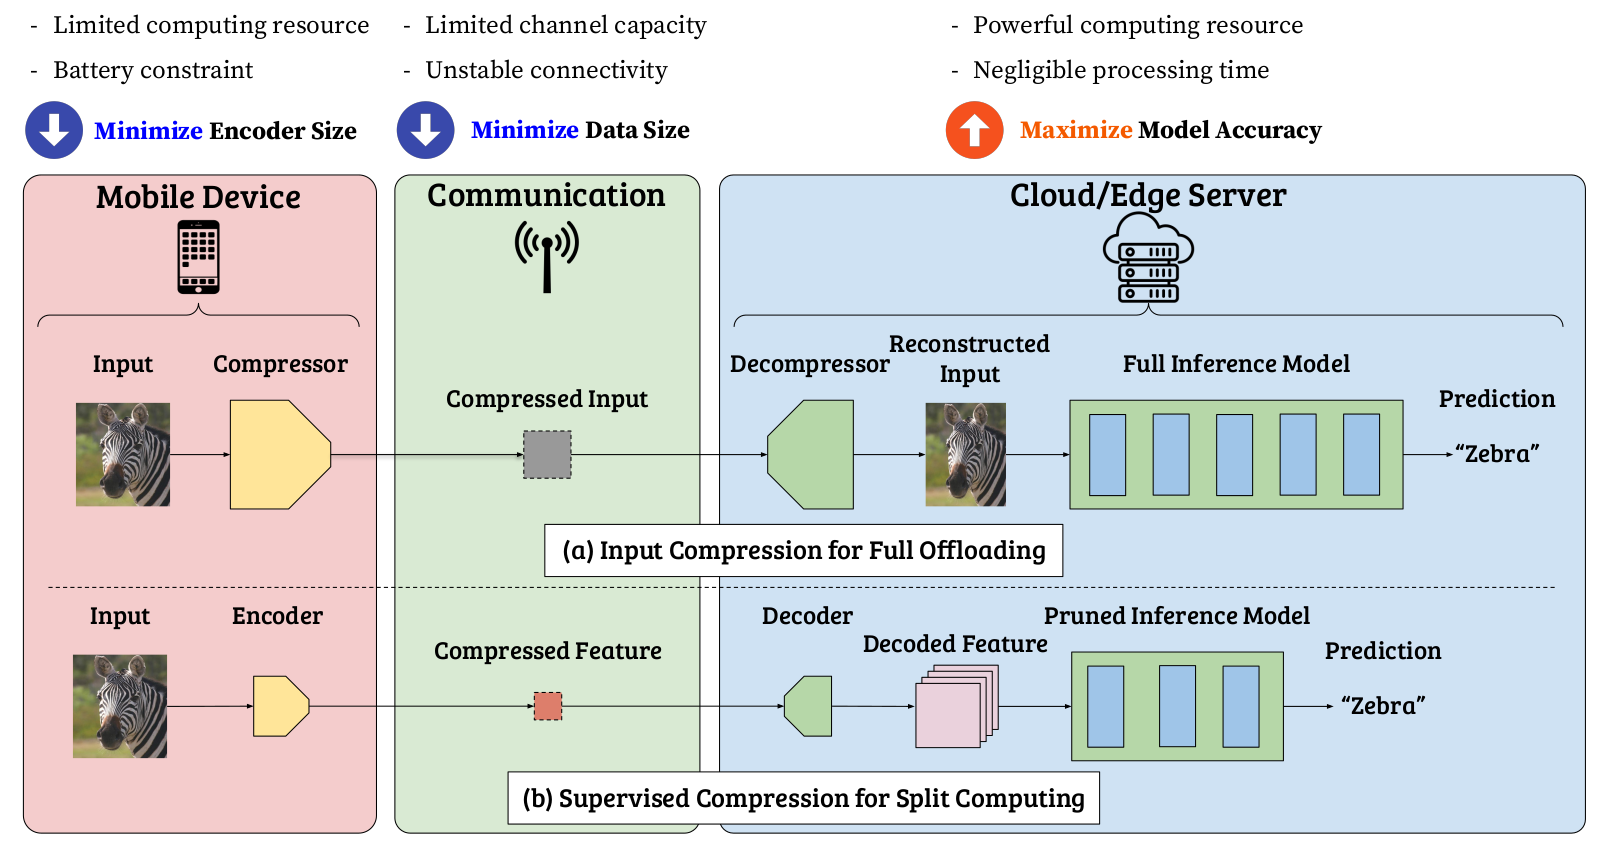 Supervised Compression for Split Computing